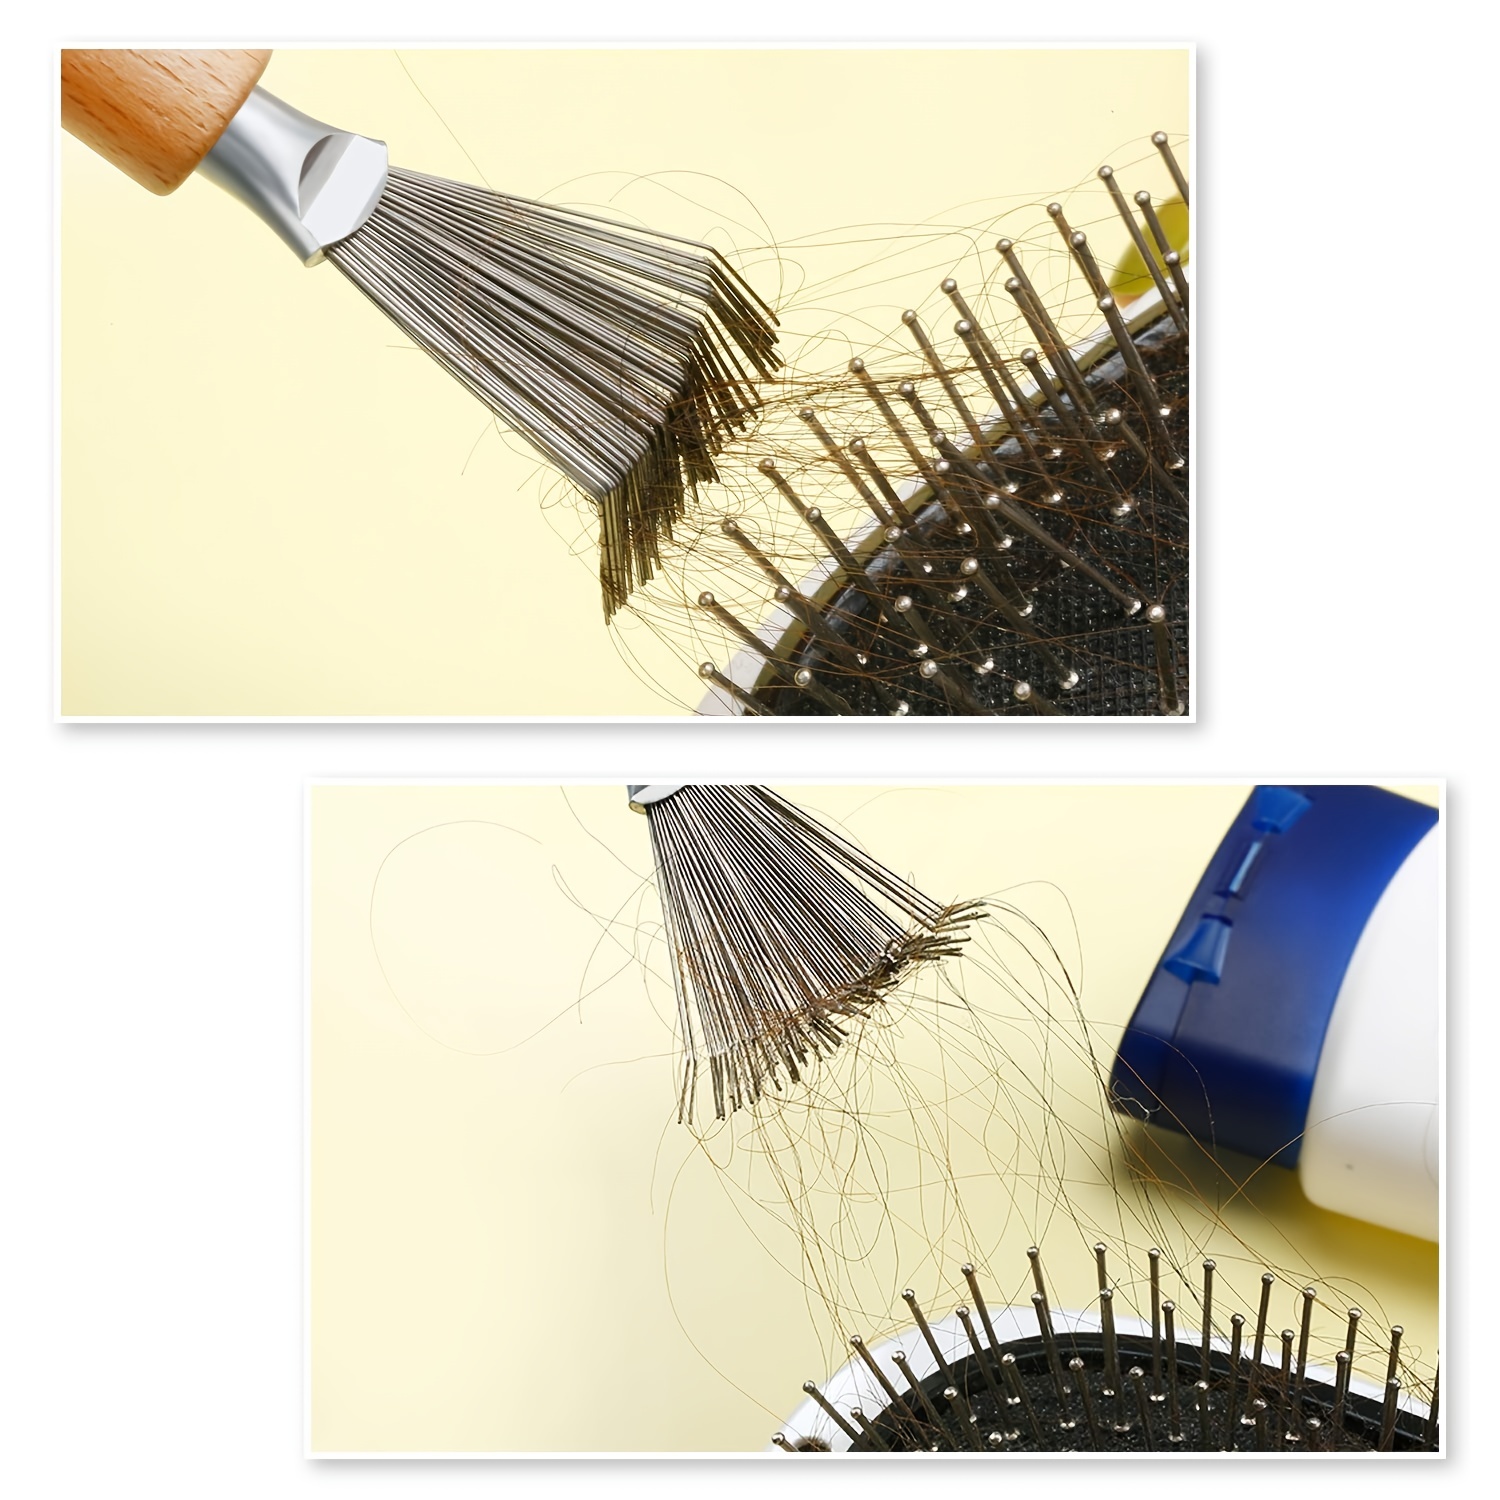 Hair Brush Cleaner Tool Hair Brush Cleaning Rake Hair Brush - Temu